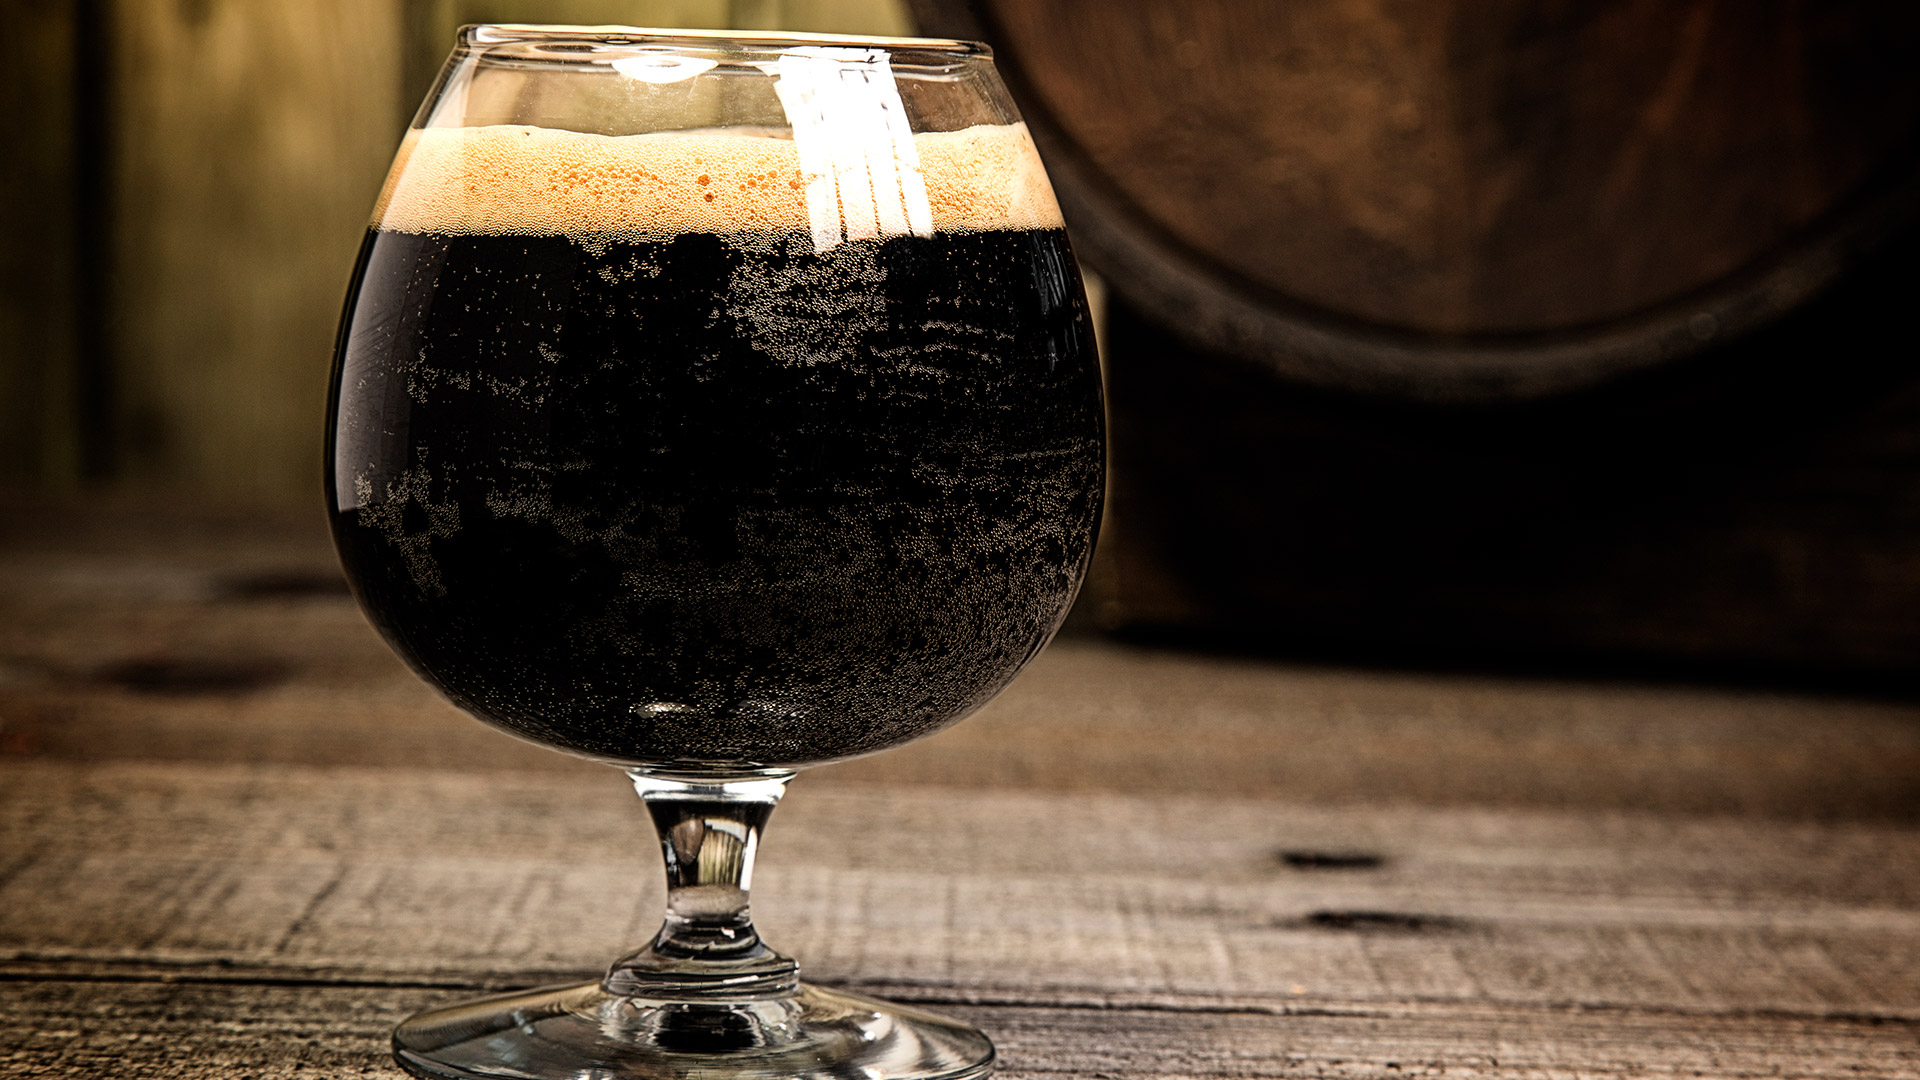 Cerveza negra: por qué se convirtió en el ingrediente estrella de la cocina  - Infobae